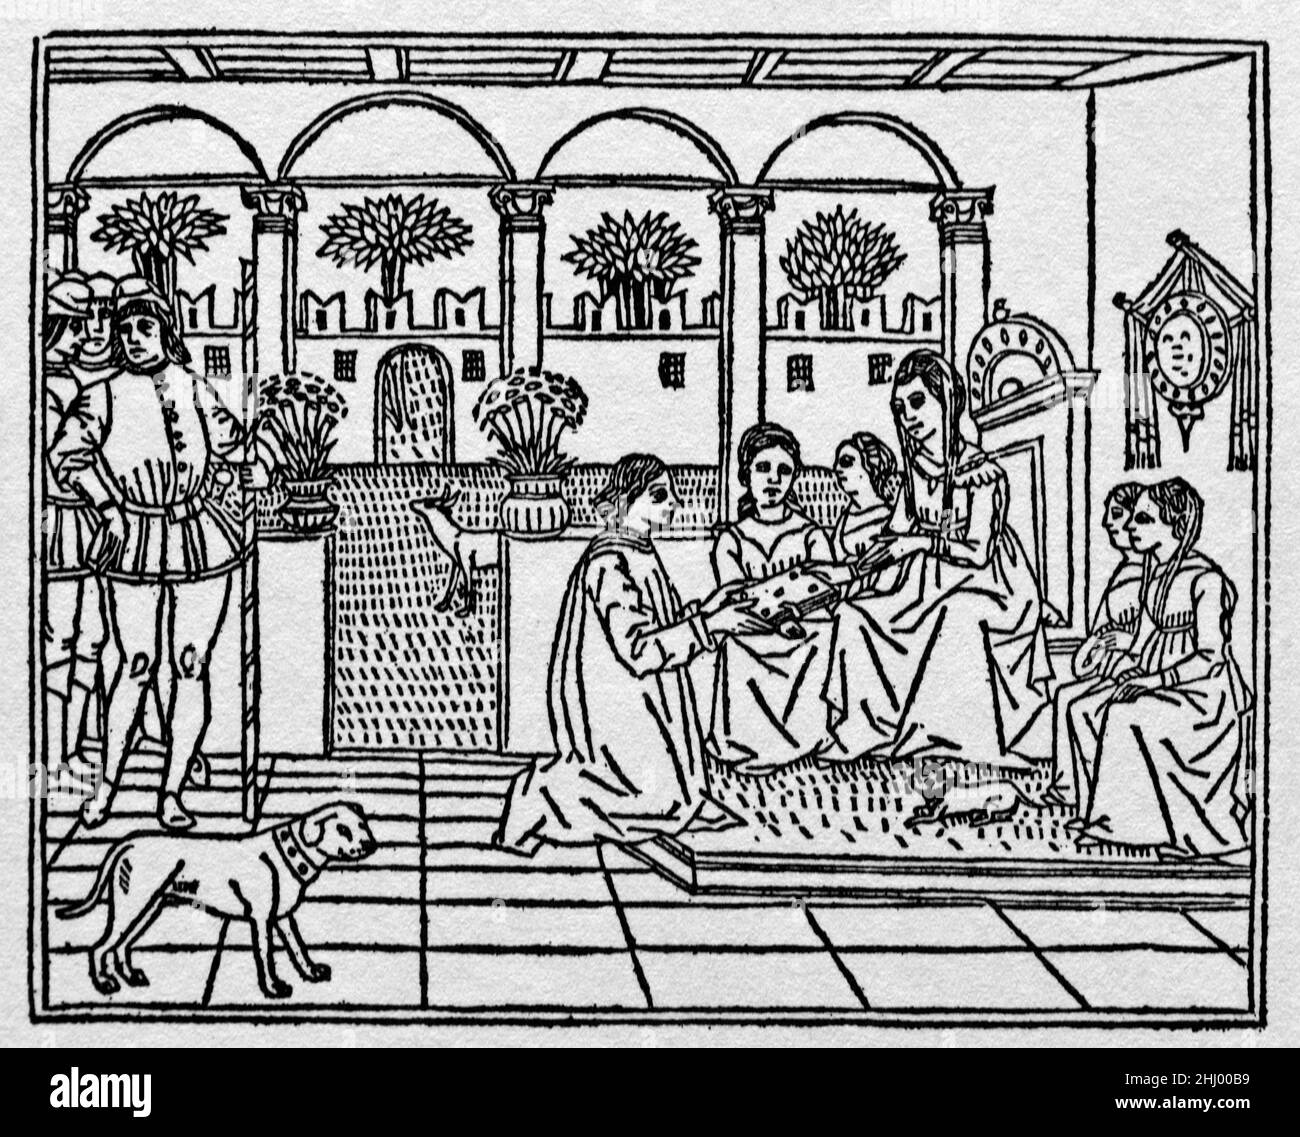 Masuccio Salernitano, poète et écrivain italien (1410-1475) alias Tommaso Guardati, présentant sa collection il Novellino de cinquante histoires courtes à un patron d'art aristocratique dans un cadre de style palais Renaissance Italie. c15th Woodcut Print, Engraving ou Illustration. Banque D'Images